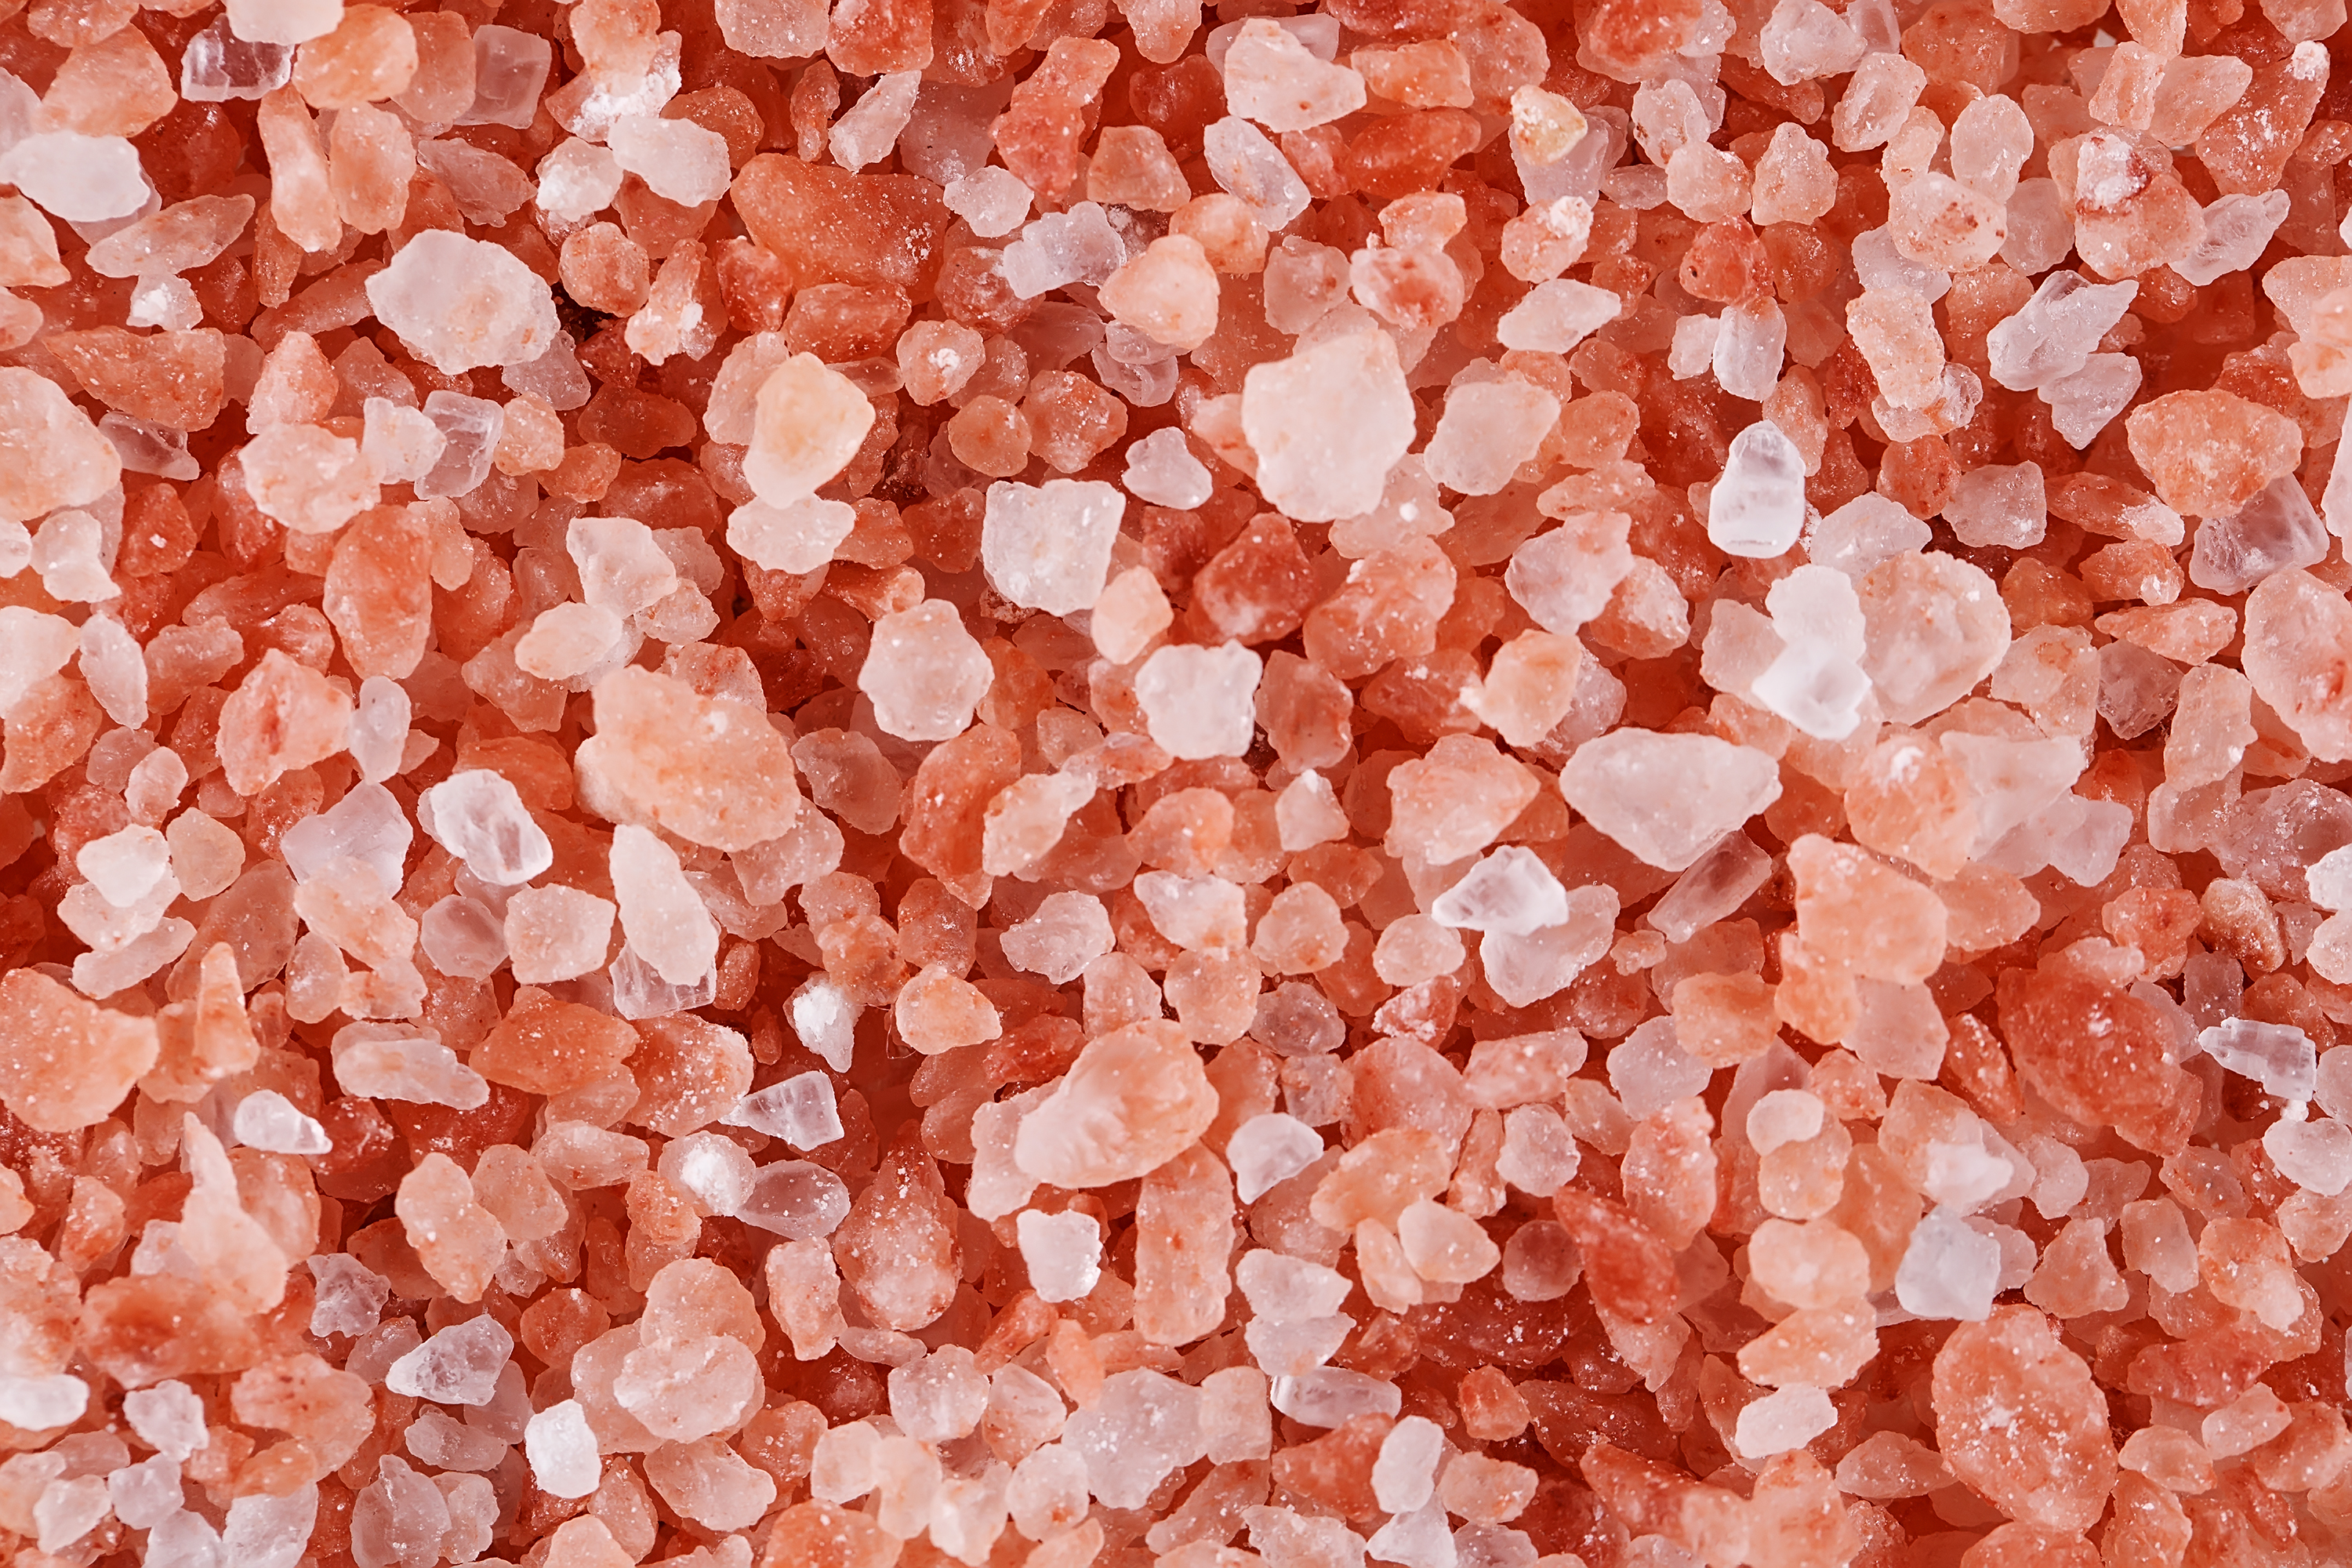 Solné jeskyně jsou stavěny nejčastěji z himalájské soli, která má na zdraví člověka velice blahodárné účinky. Obsahuje téměř 85 různých léčivých složek...